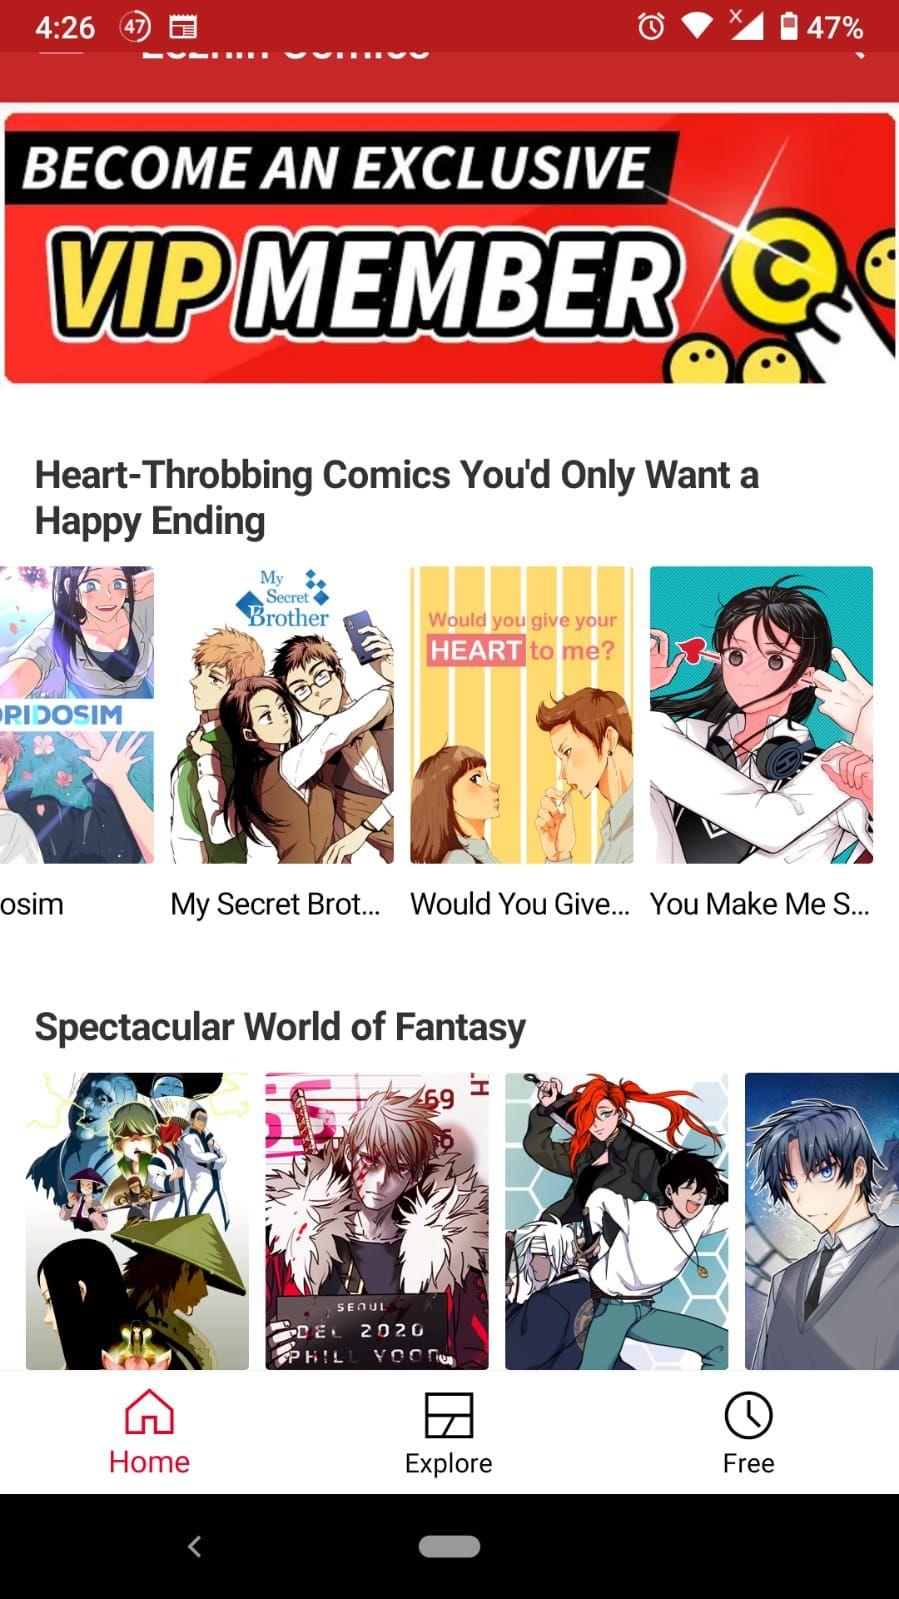 Die 5 besten Manhwa- und Webtoons-Apps für Android und iPhone